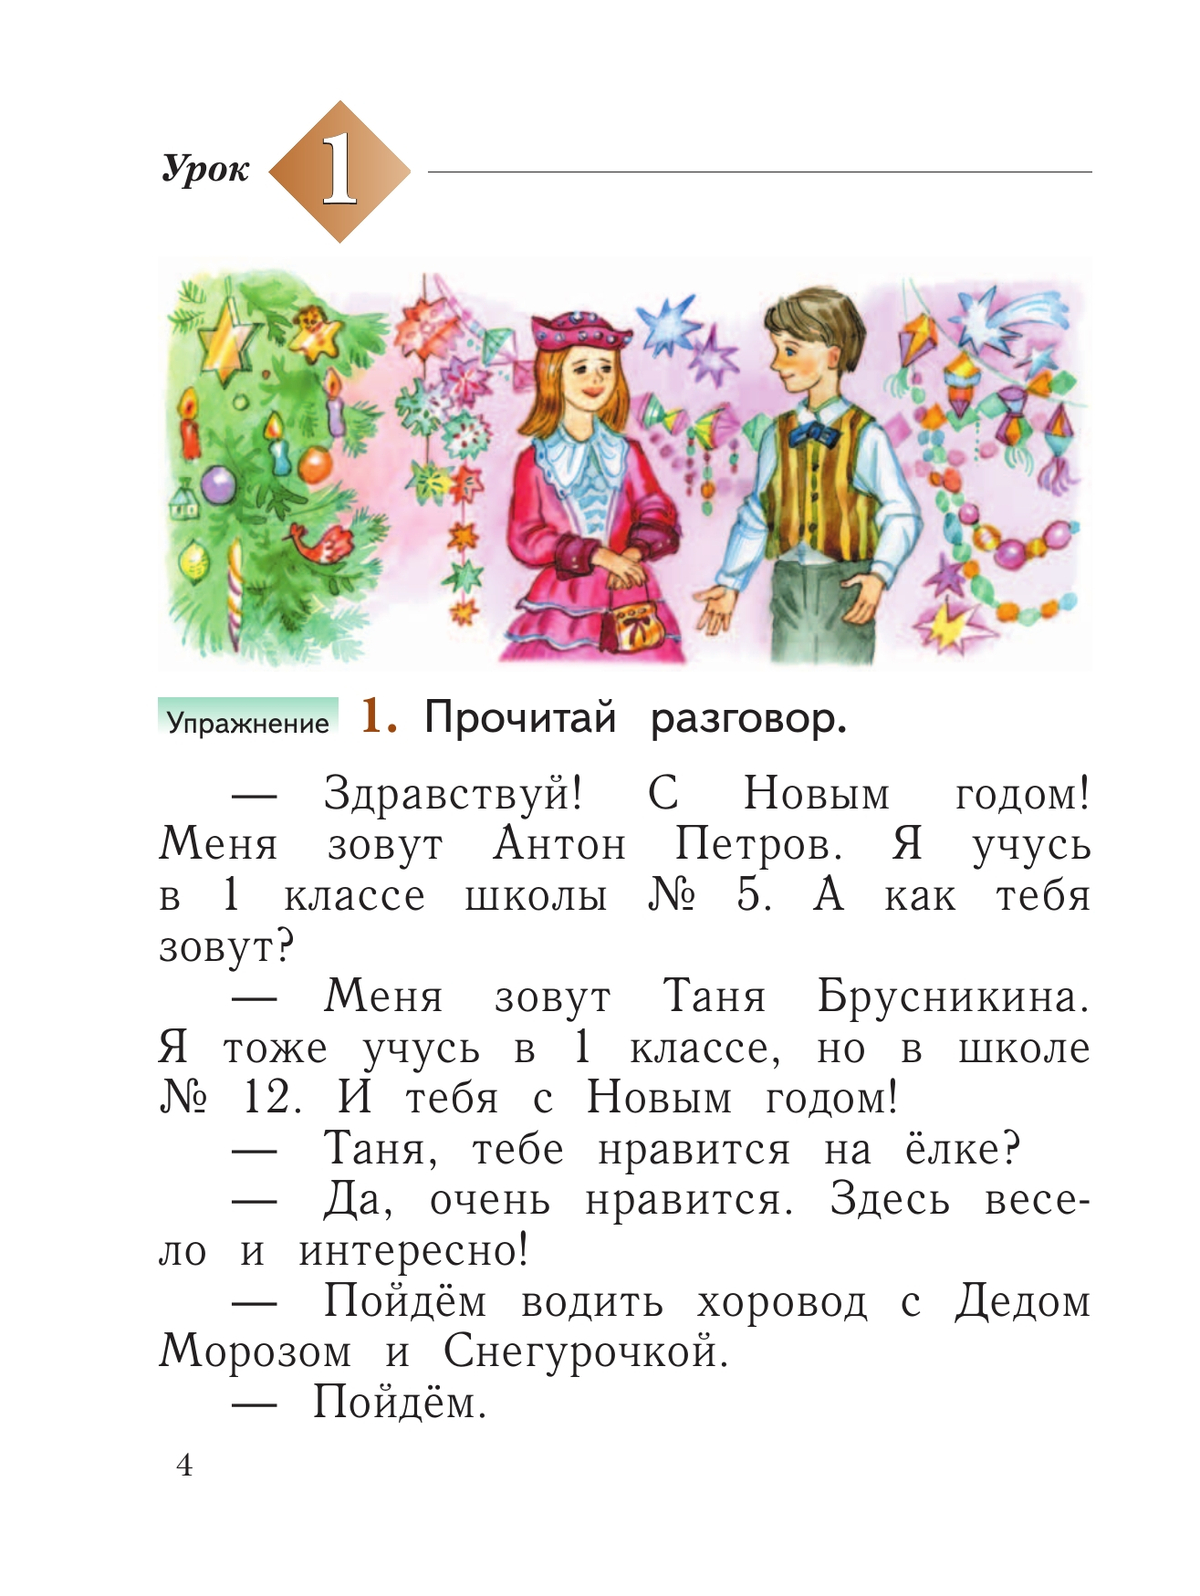 Русский язык. 1 класс. Учебное пособие 9